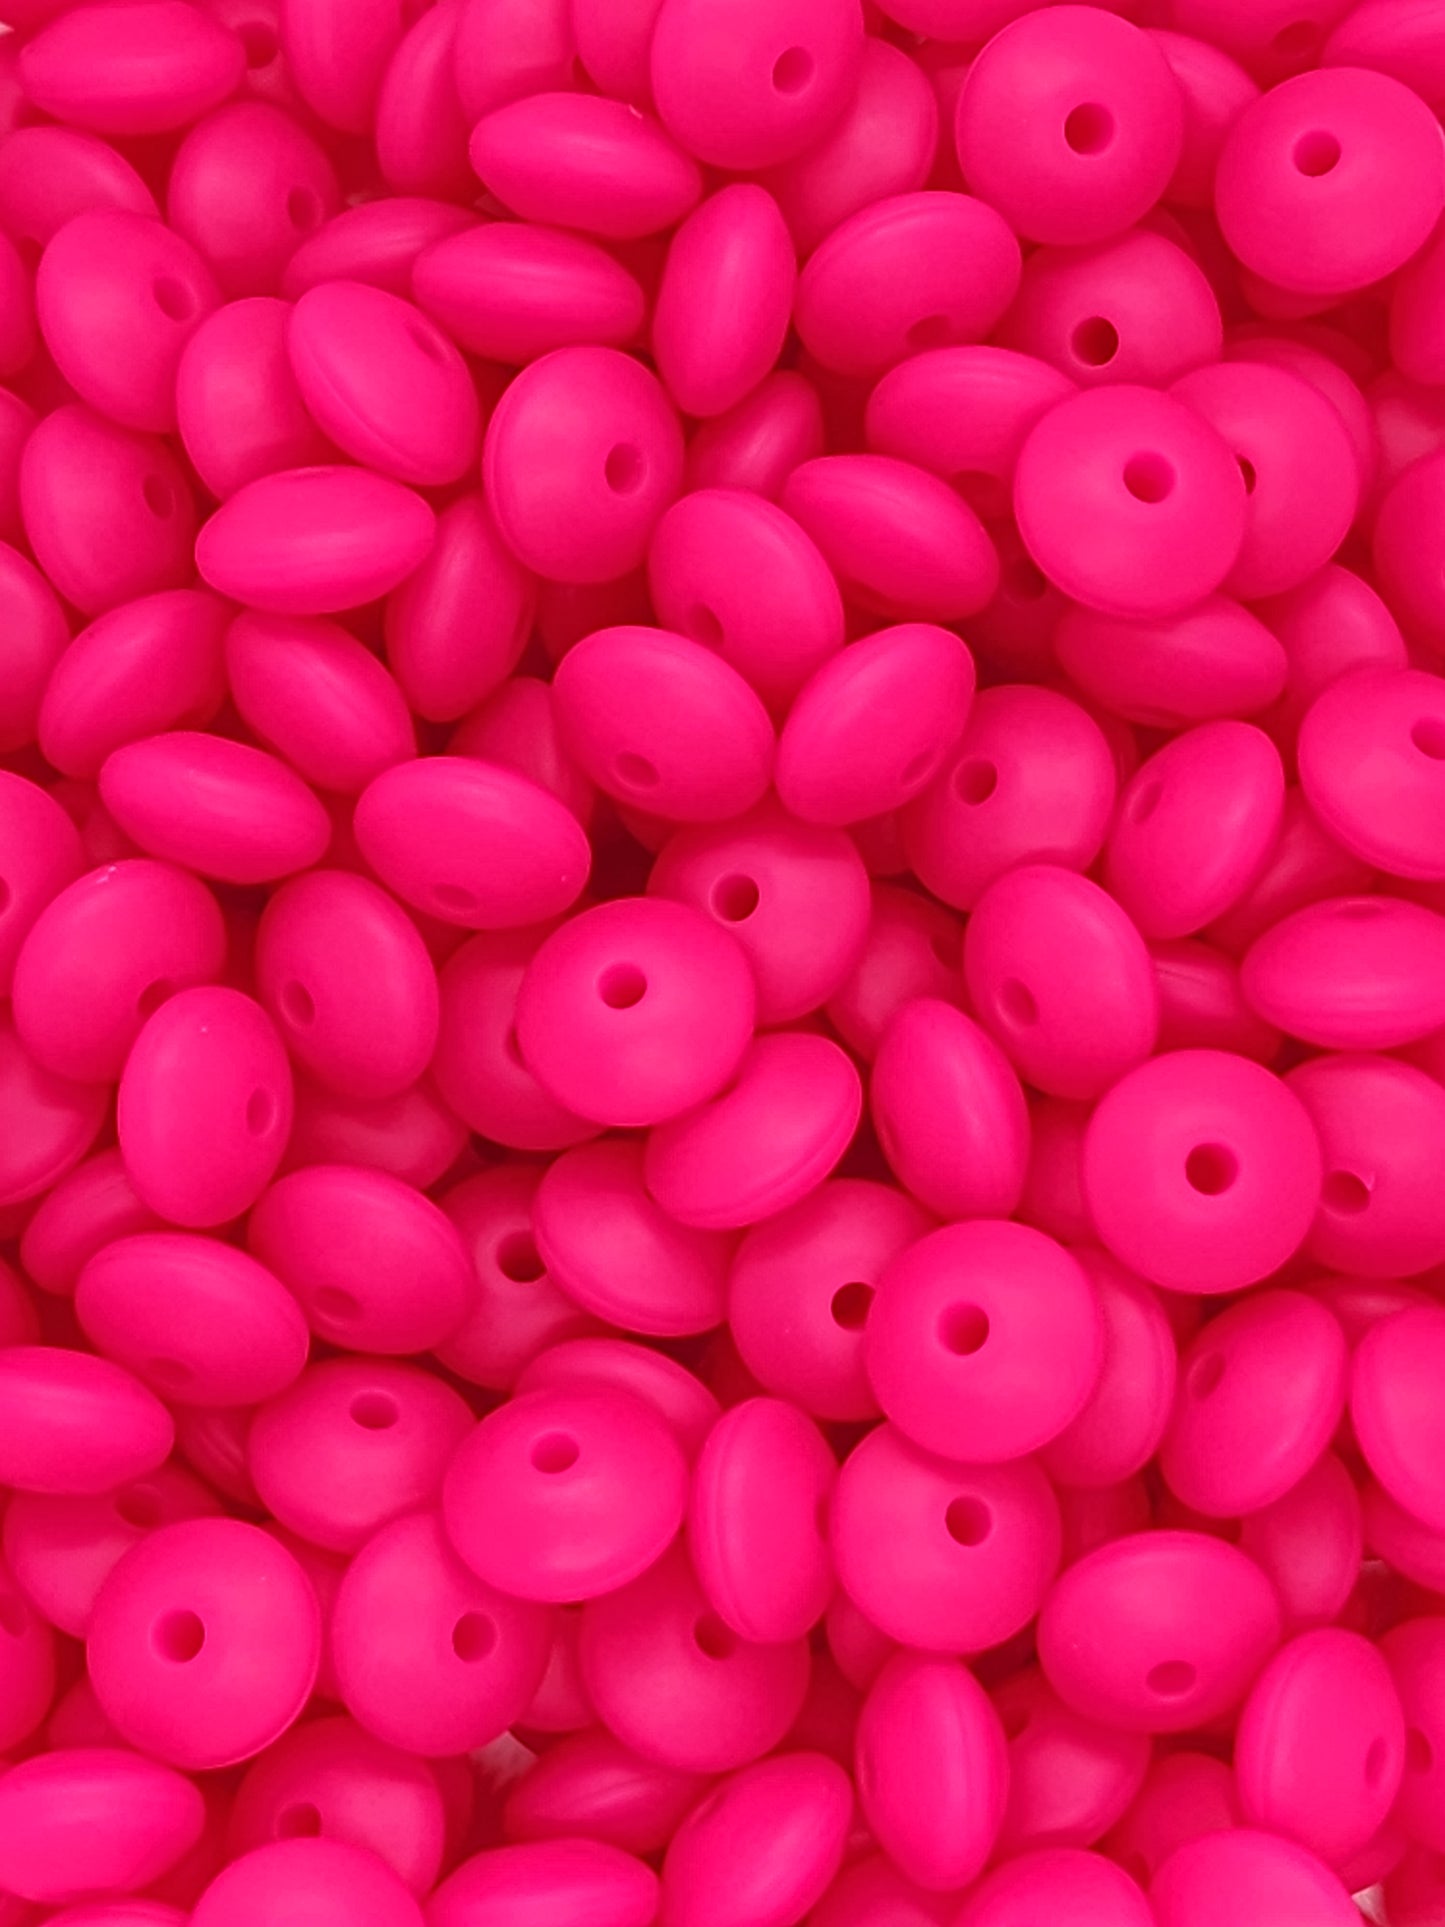 24. Hot Pink Lentils